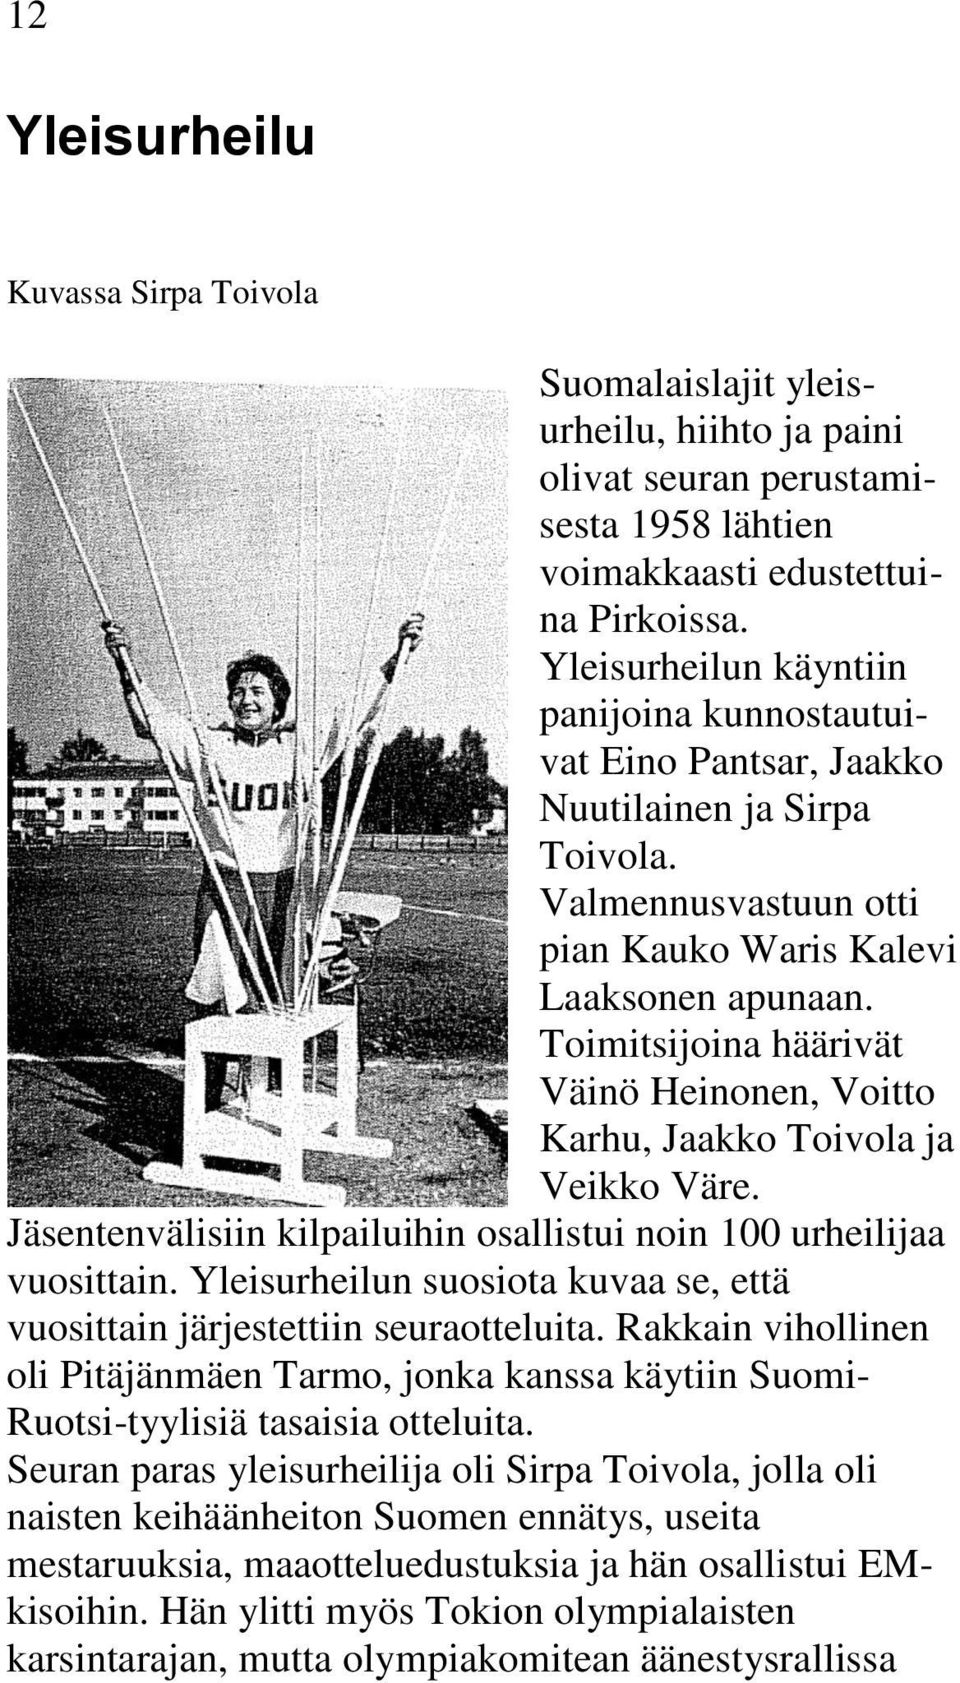 Toimitsijoina häärivät Väinö Heinonen, Voitto Karhu, Jaakko Toivola ja Veikko Väre. Jäsentenvälisiin kilpailuihin osallistui noin 100 urheilijaa vuosittain.